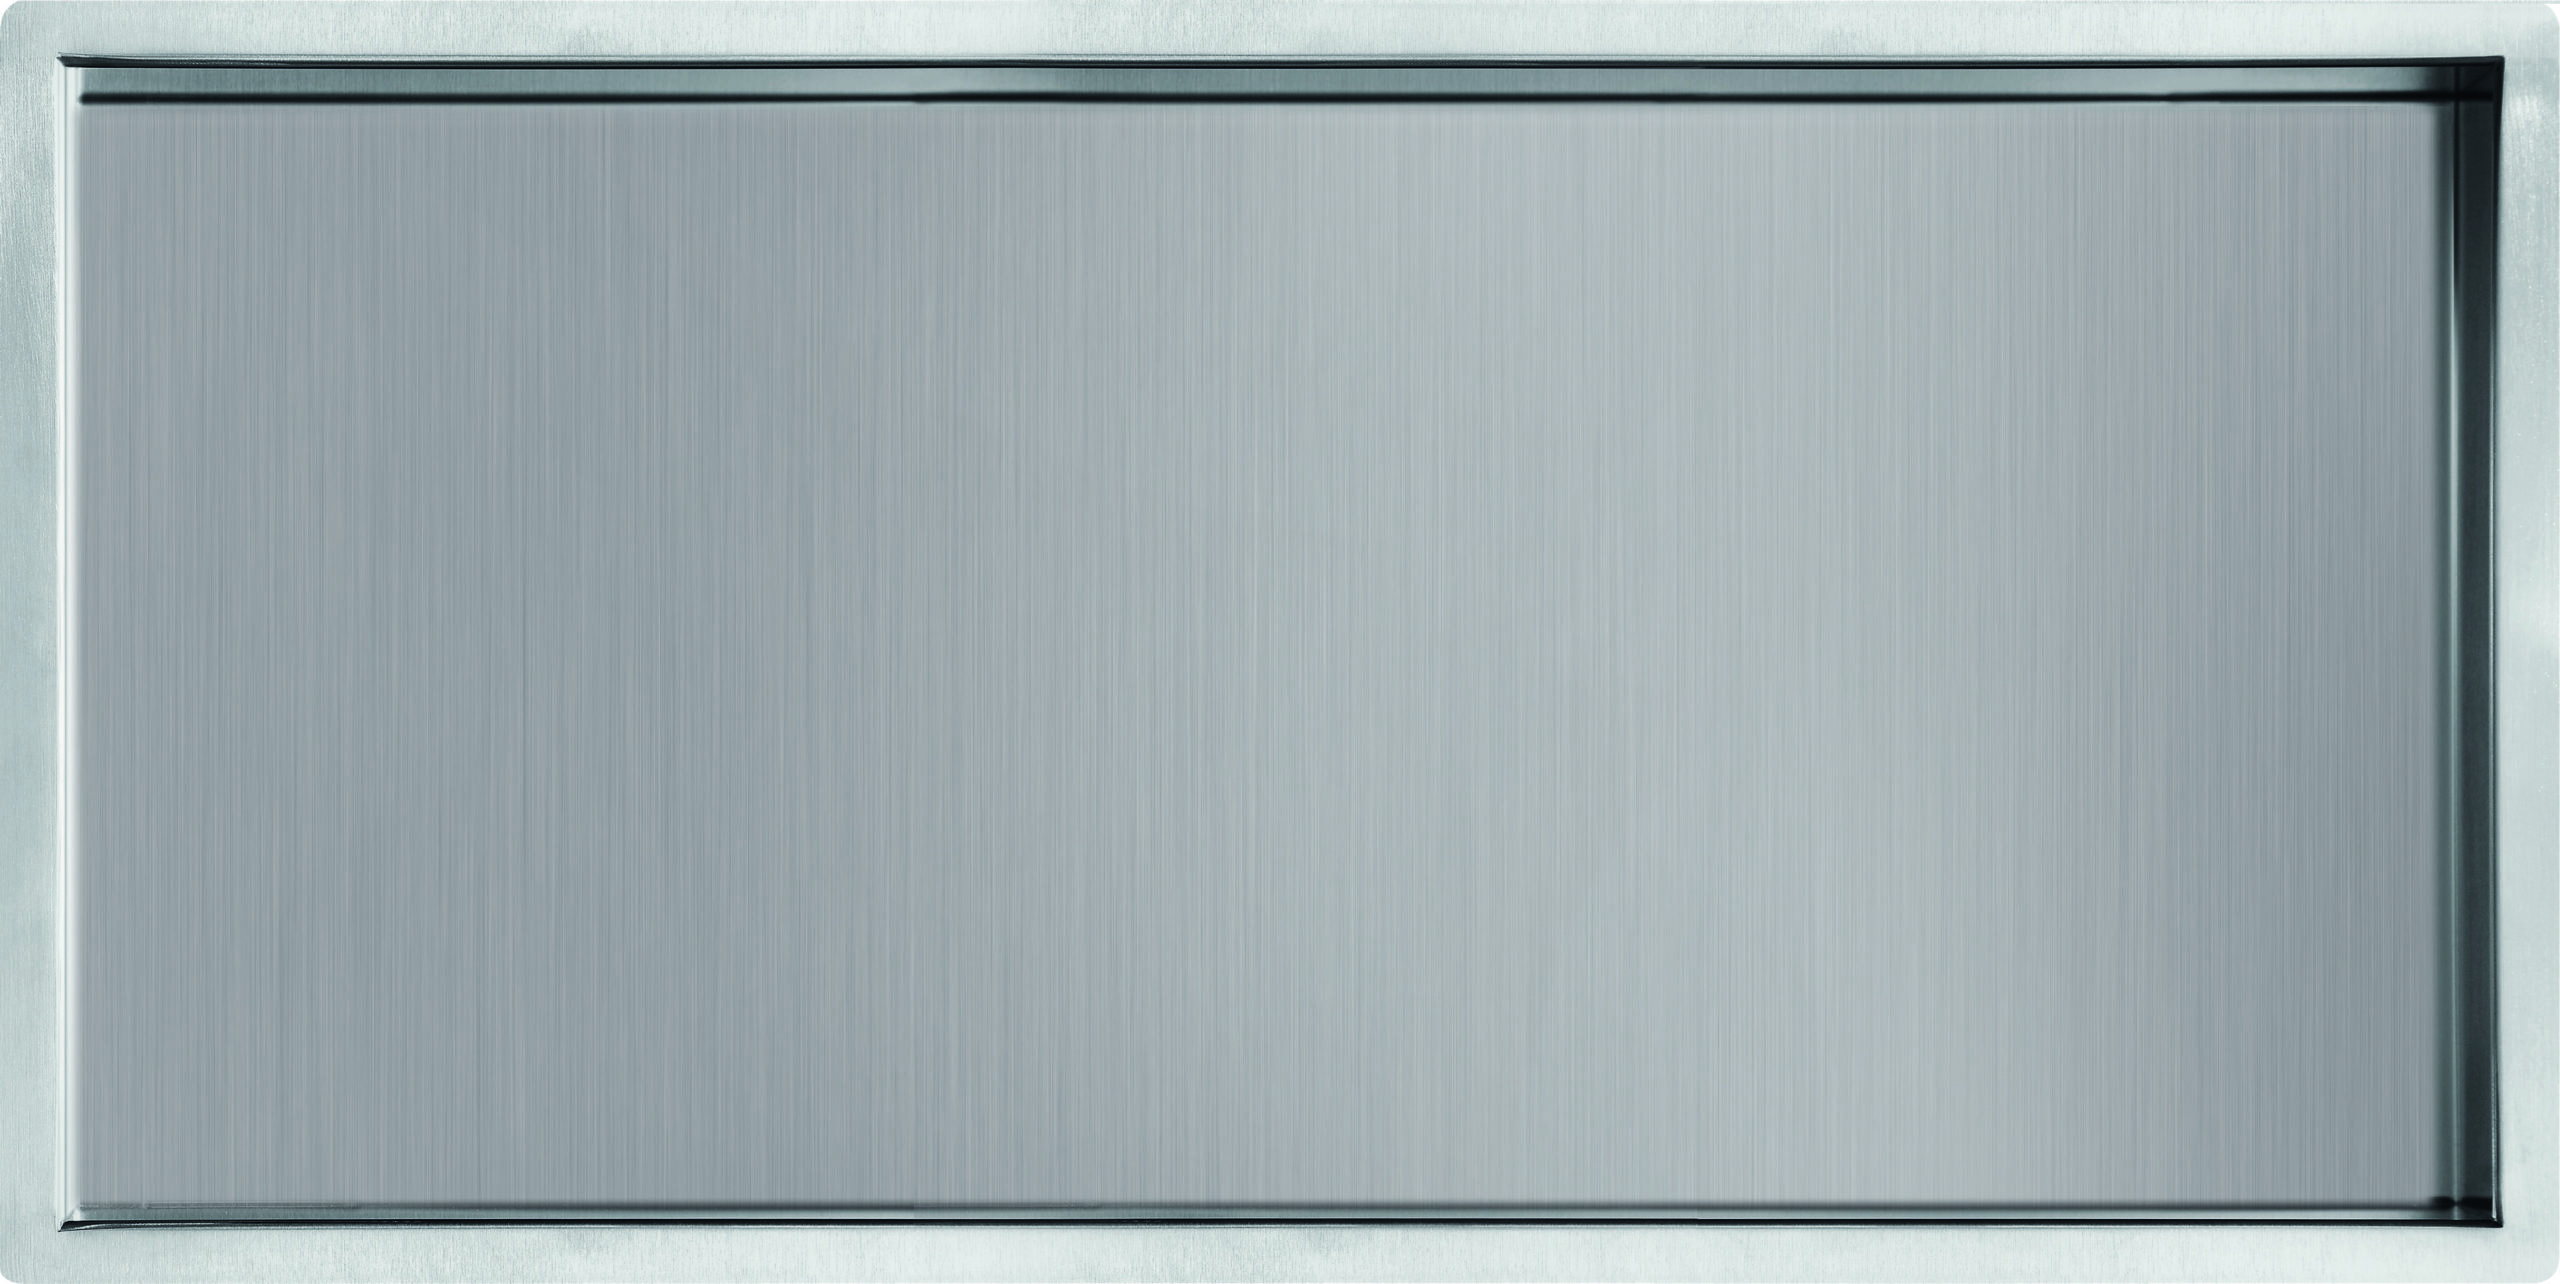 Stainless Steel Shower Niche 600x300 - Just Taps